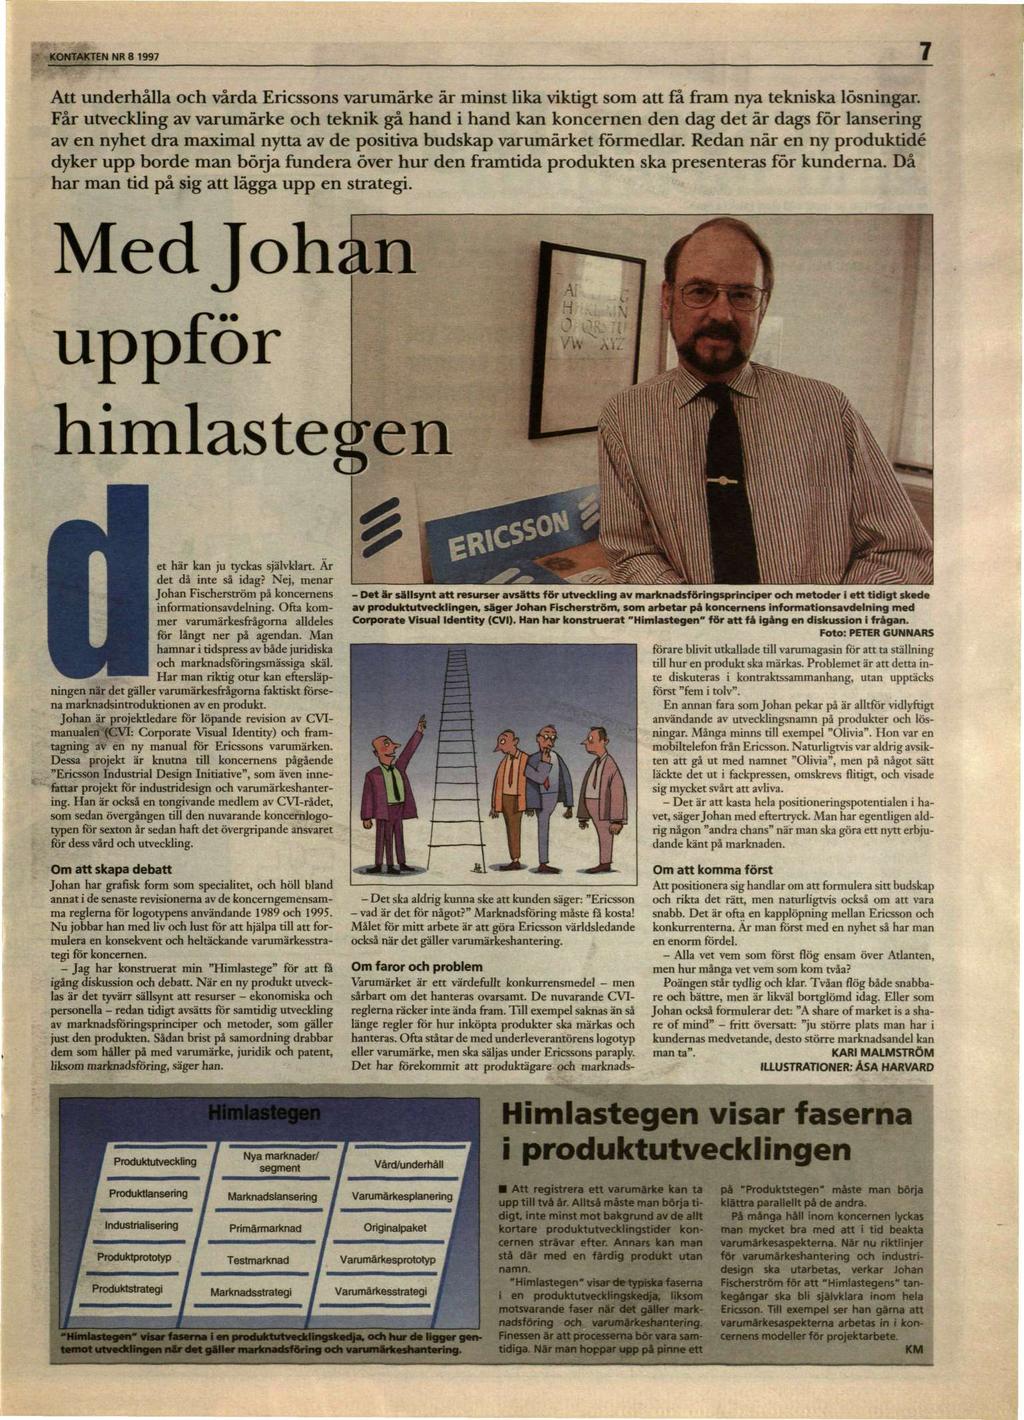 KONTAKTEN NR 8 1997 Att underhålla och vårda Ericssons varumärke är minst lika viktigt som att få fram nya tekniska lösningar.